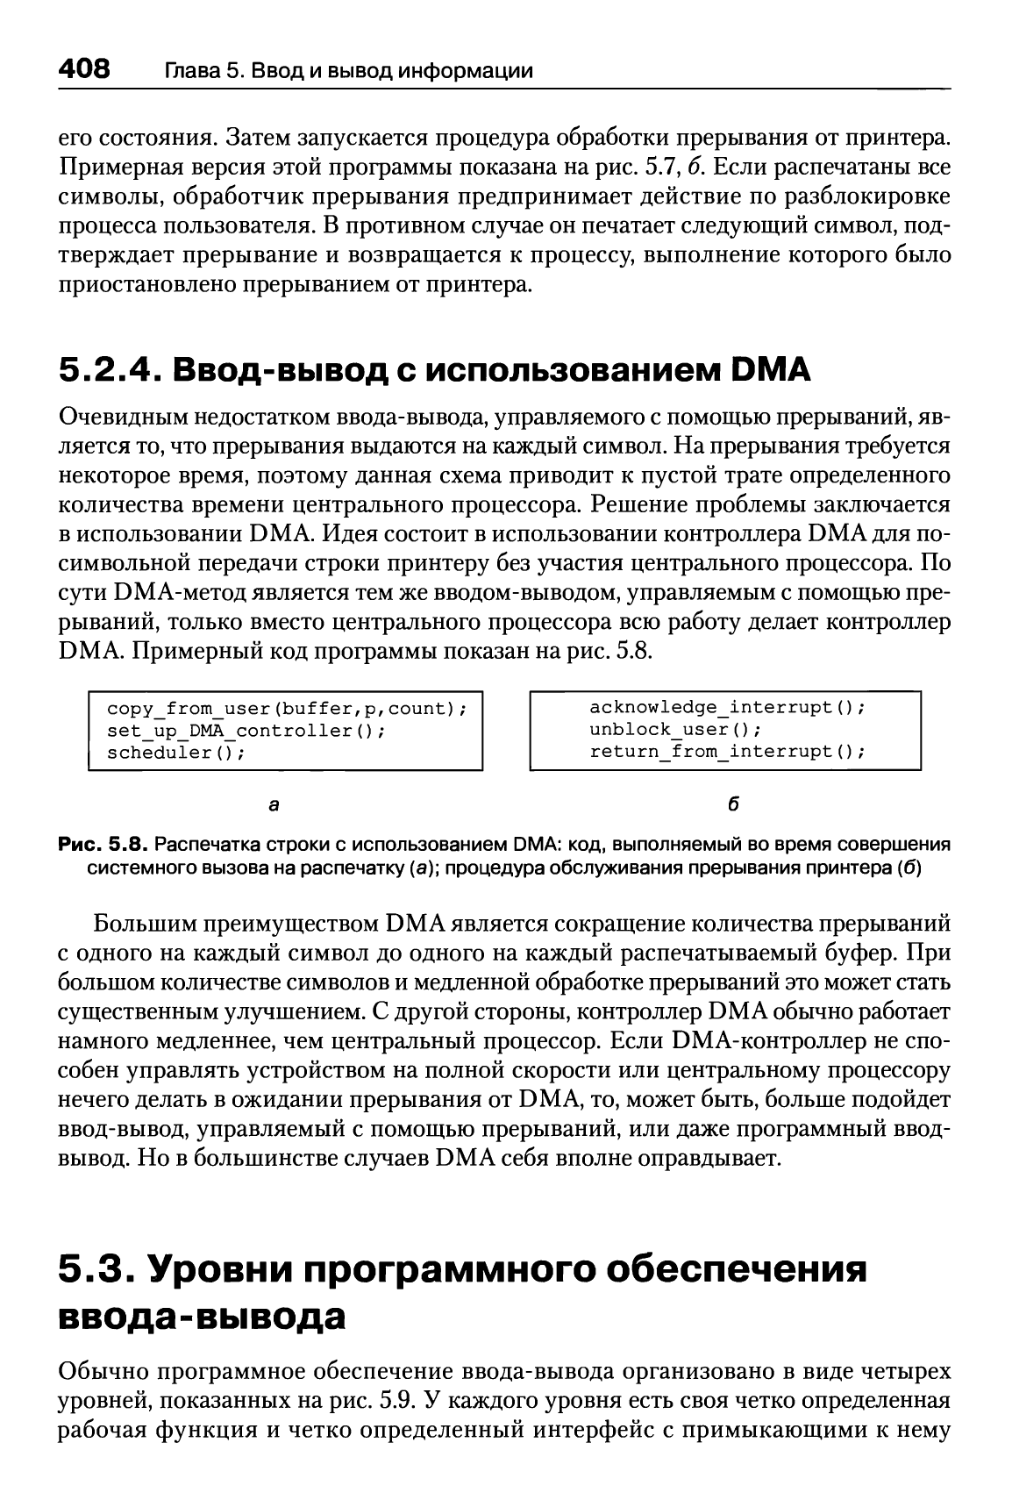 5.2.4. Ввод-вывод с использованием DMA
5.3. Уровни программного обеспечения ввода-вывода